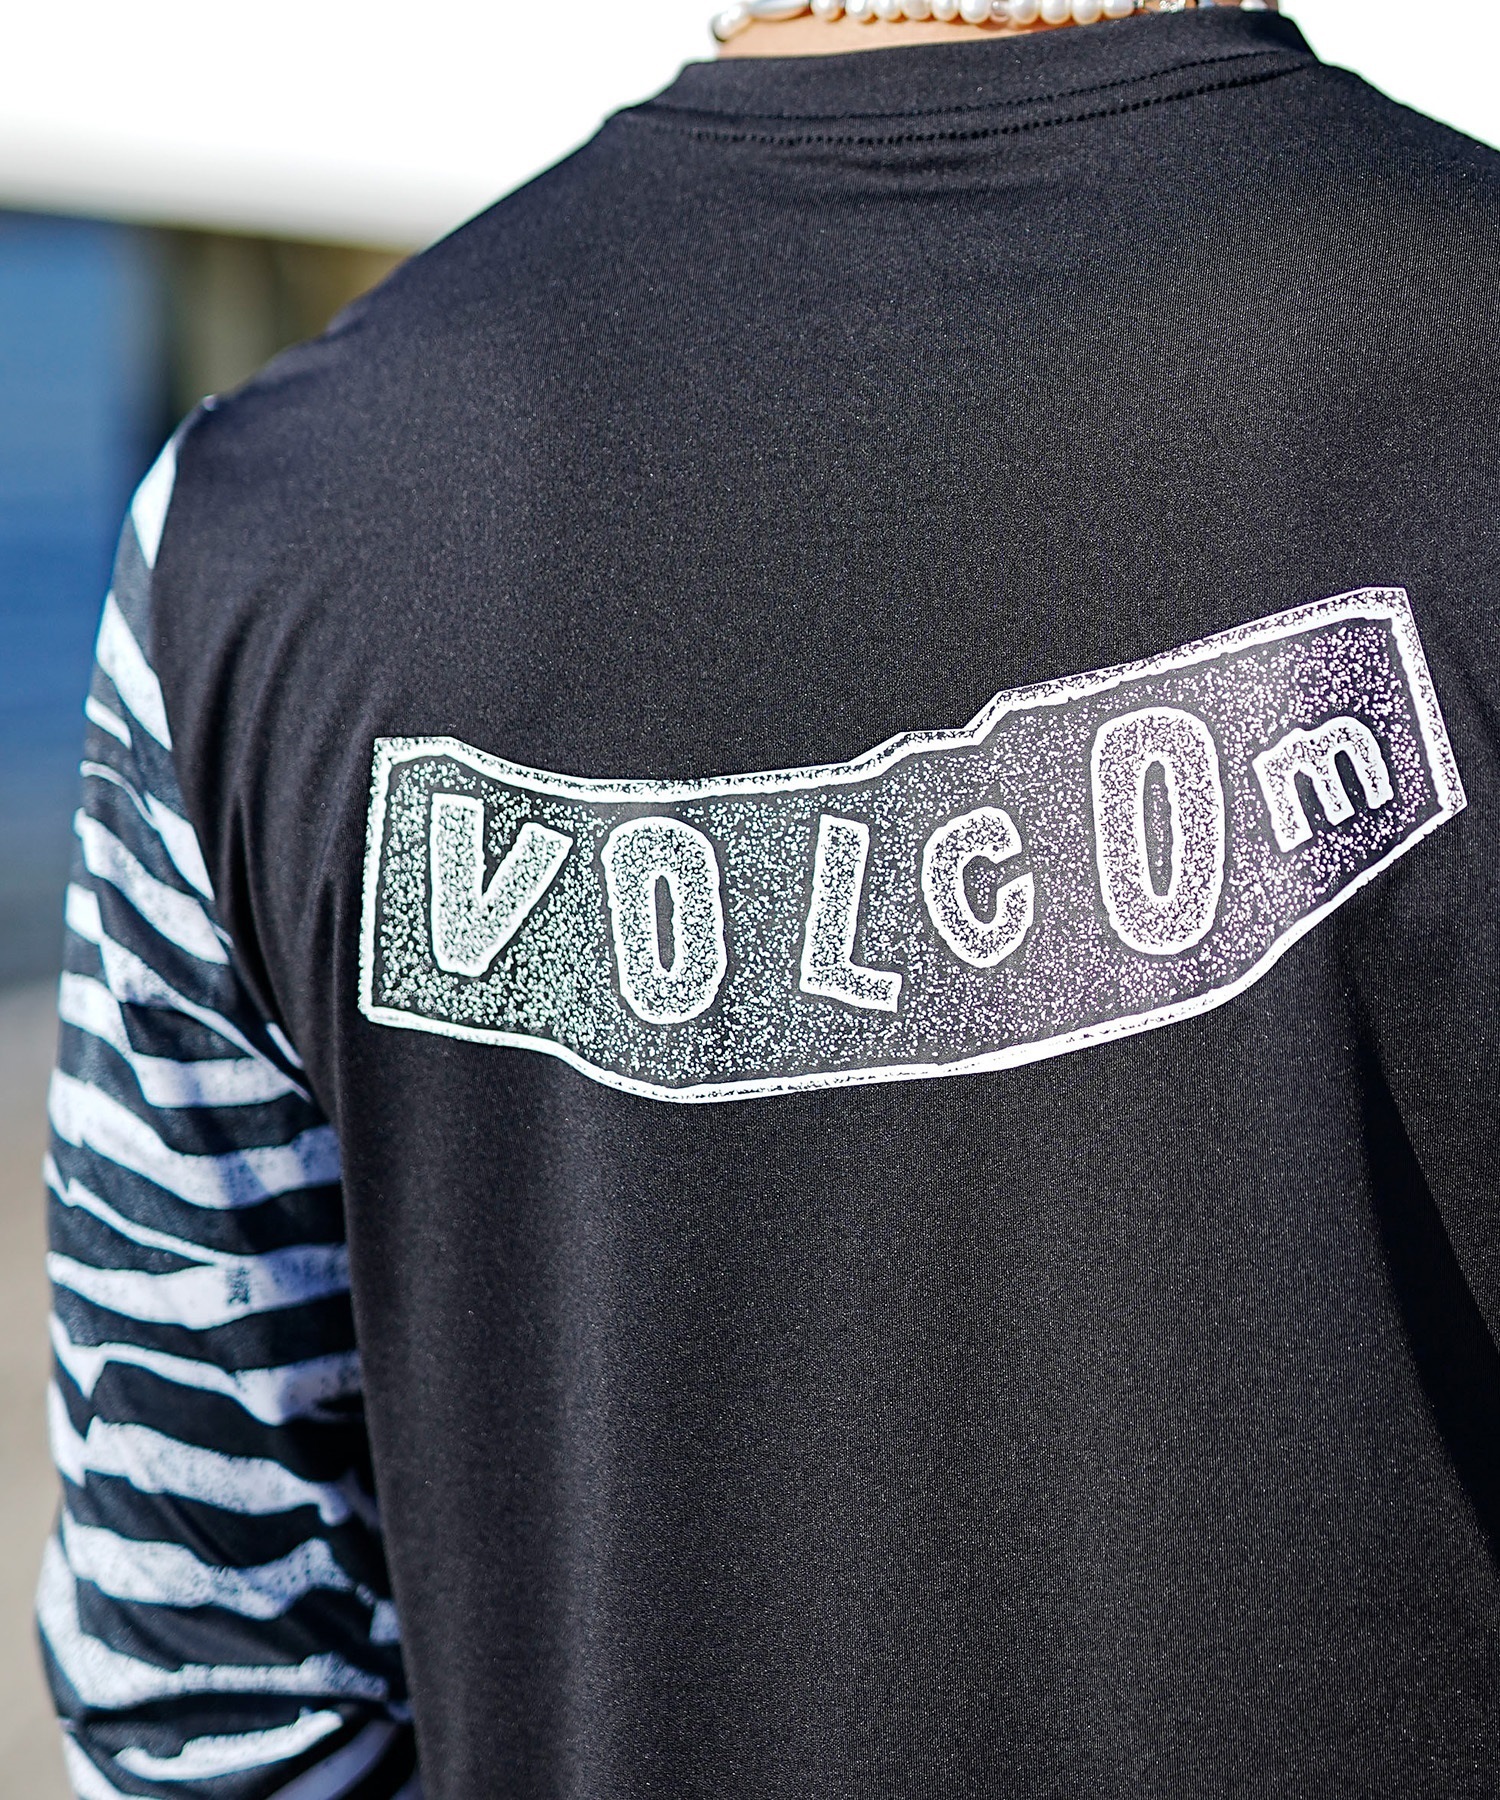 VOLCOM ボルコム メンズ ラッシュガード Tシャツ 長袖 水着 UVカット バックプリント A9312404(BLK-S)